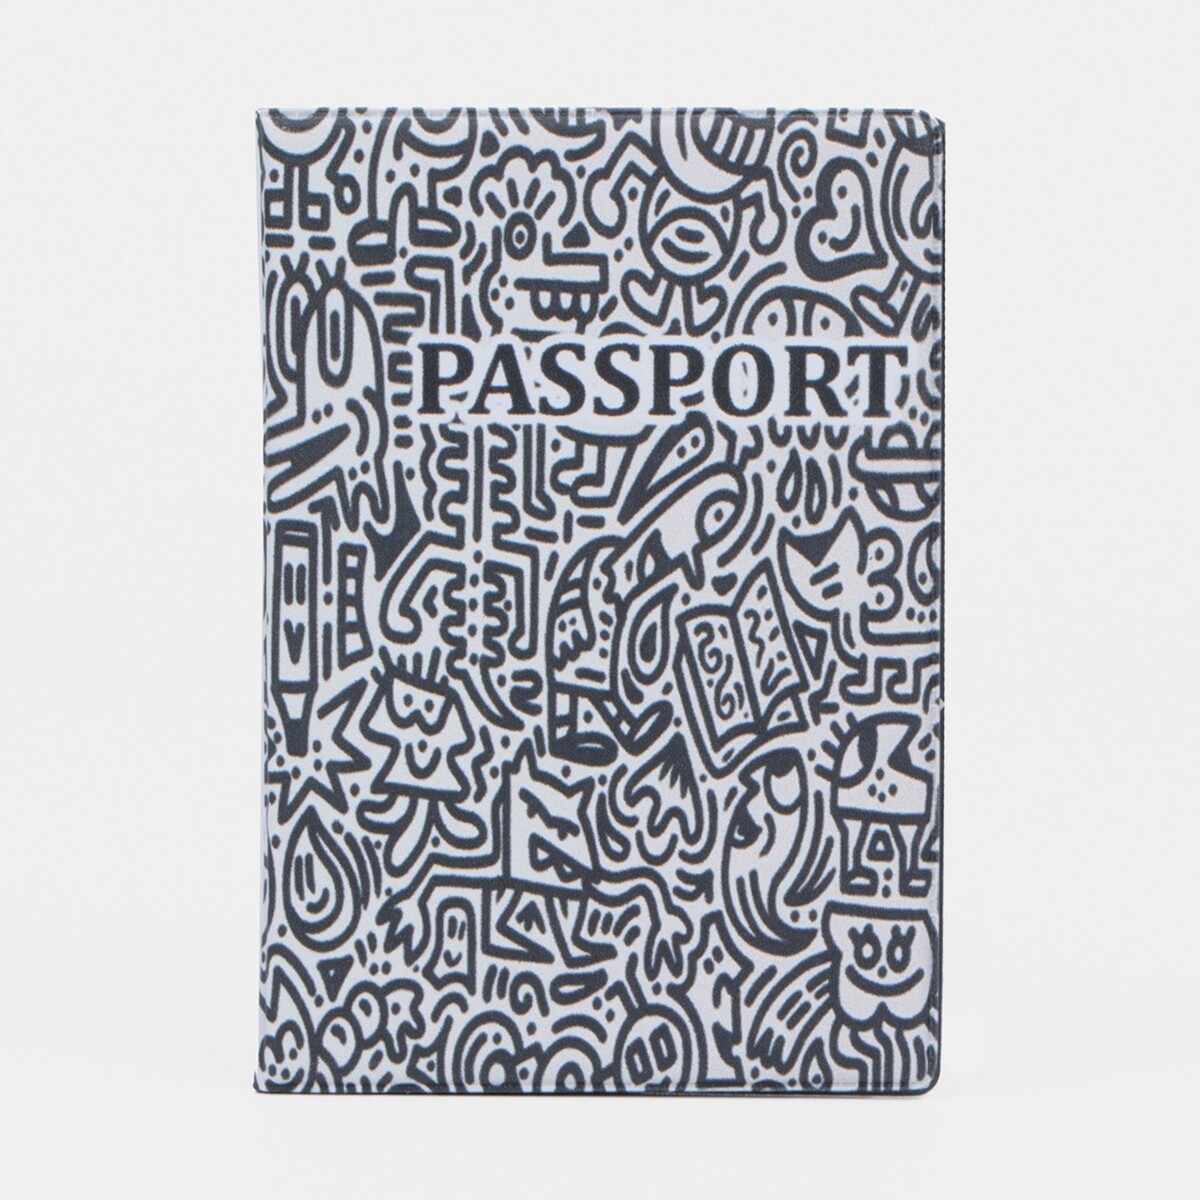 Обложка для паспорта, цвет черный/белый